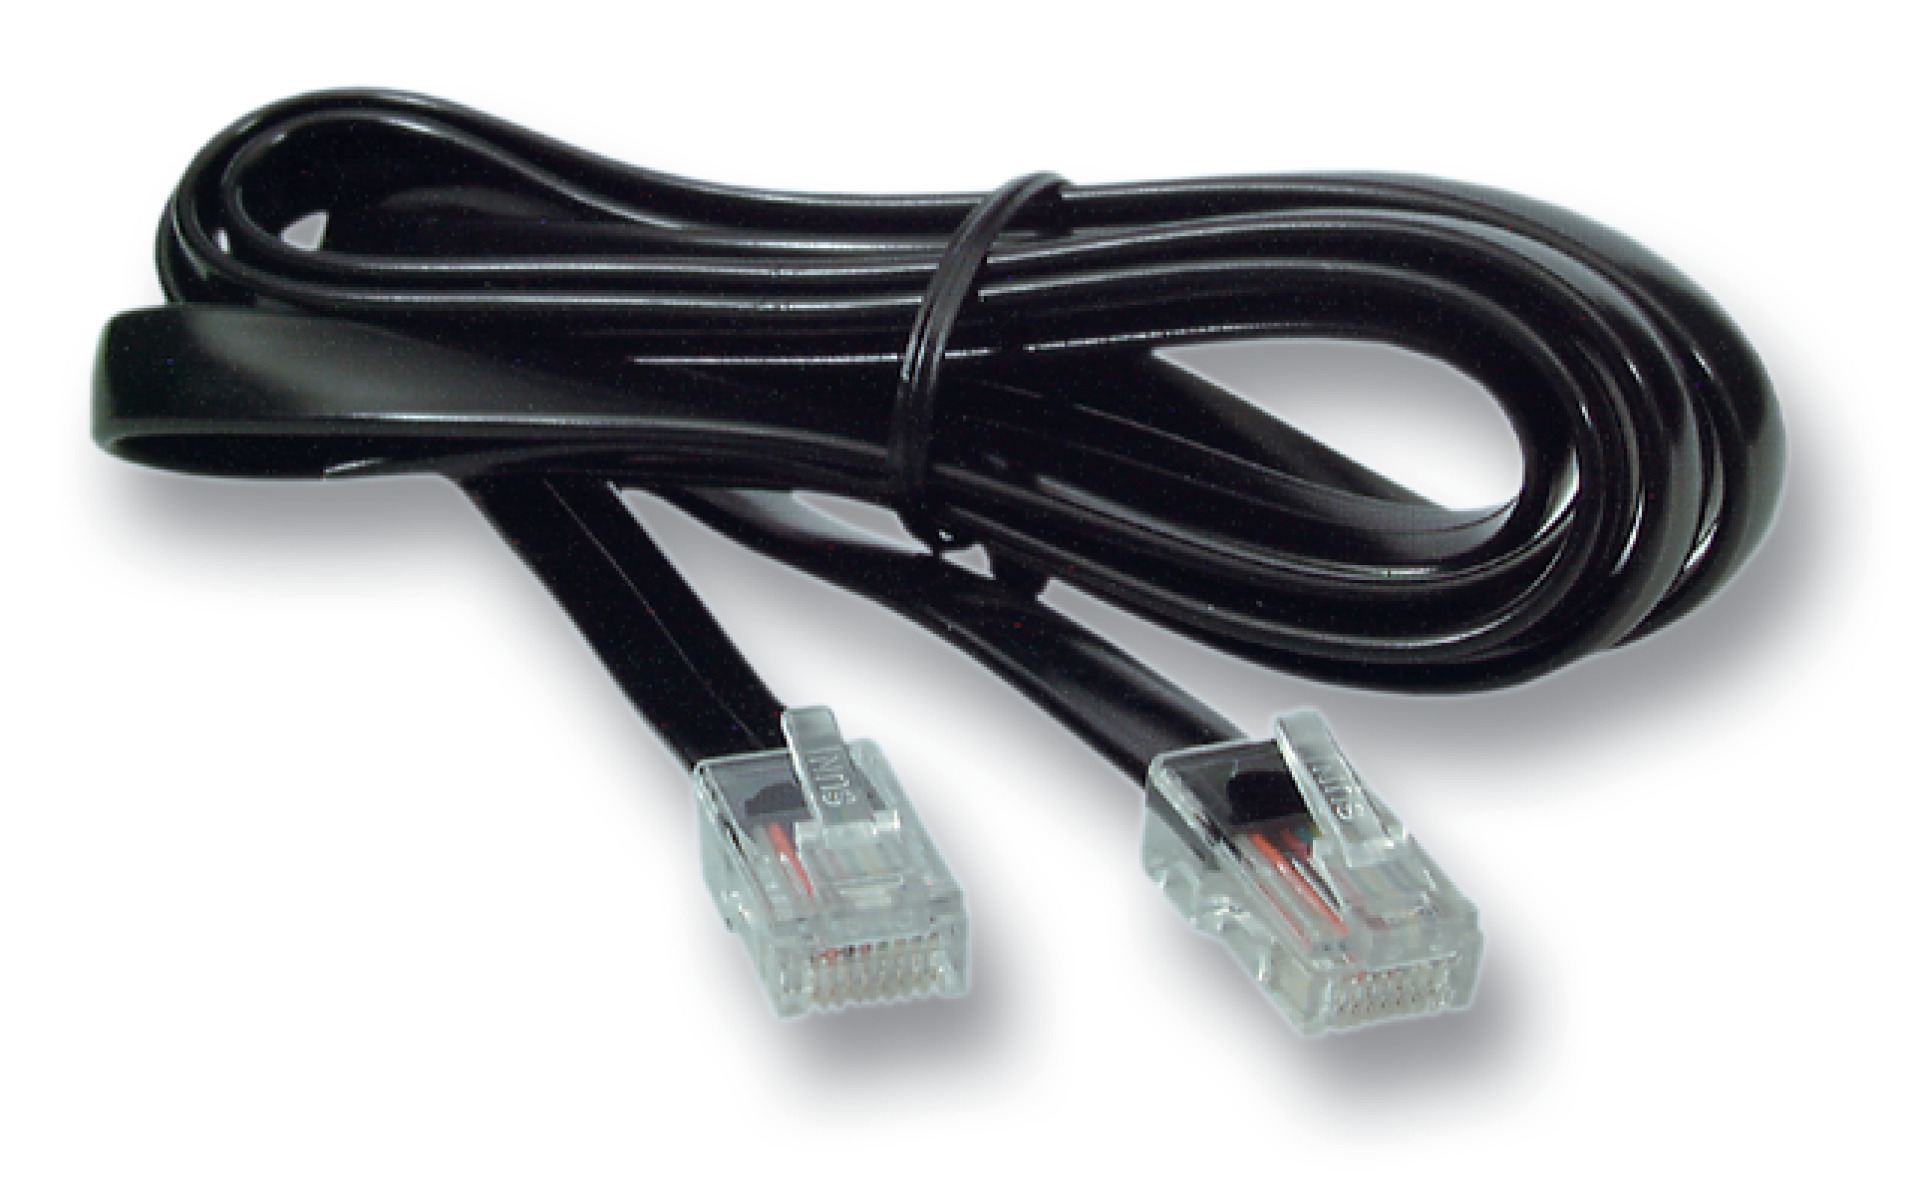 Modular cable RJ45 (8/8)/RJ45 (8/8), 1:1, flat cable, 1.5 m